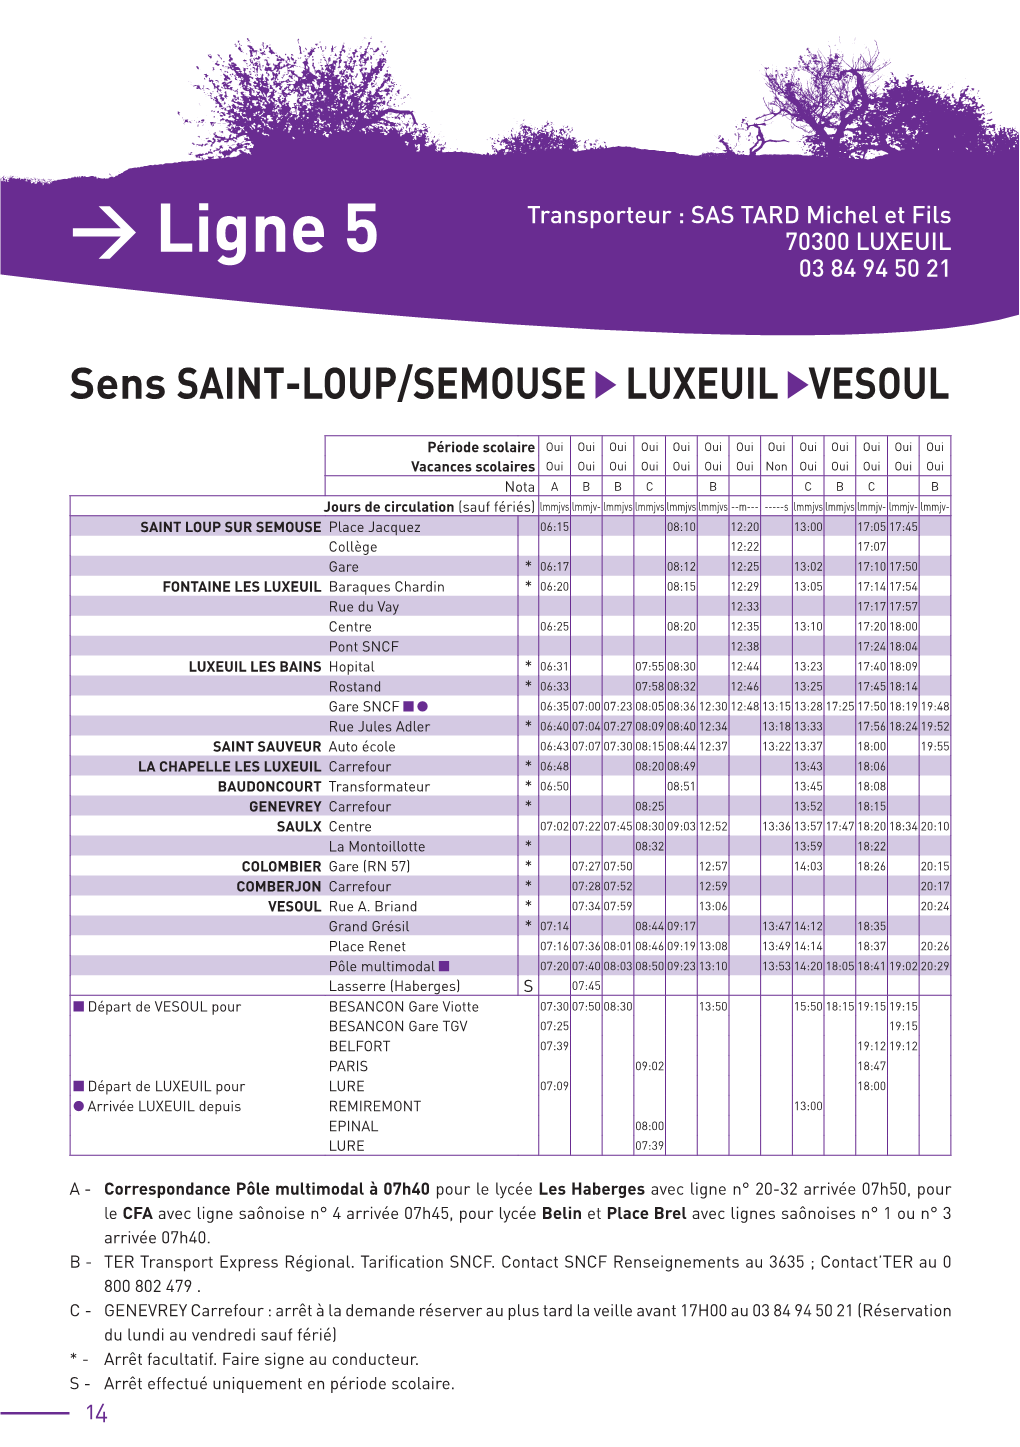 Ligne 5 Sens SAINT-LOUP/SEMOUSE LUXEUIL